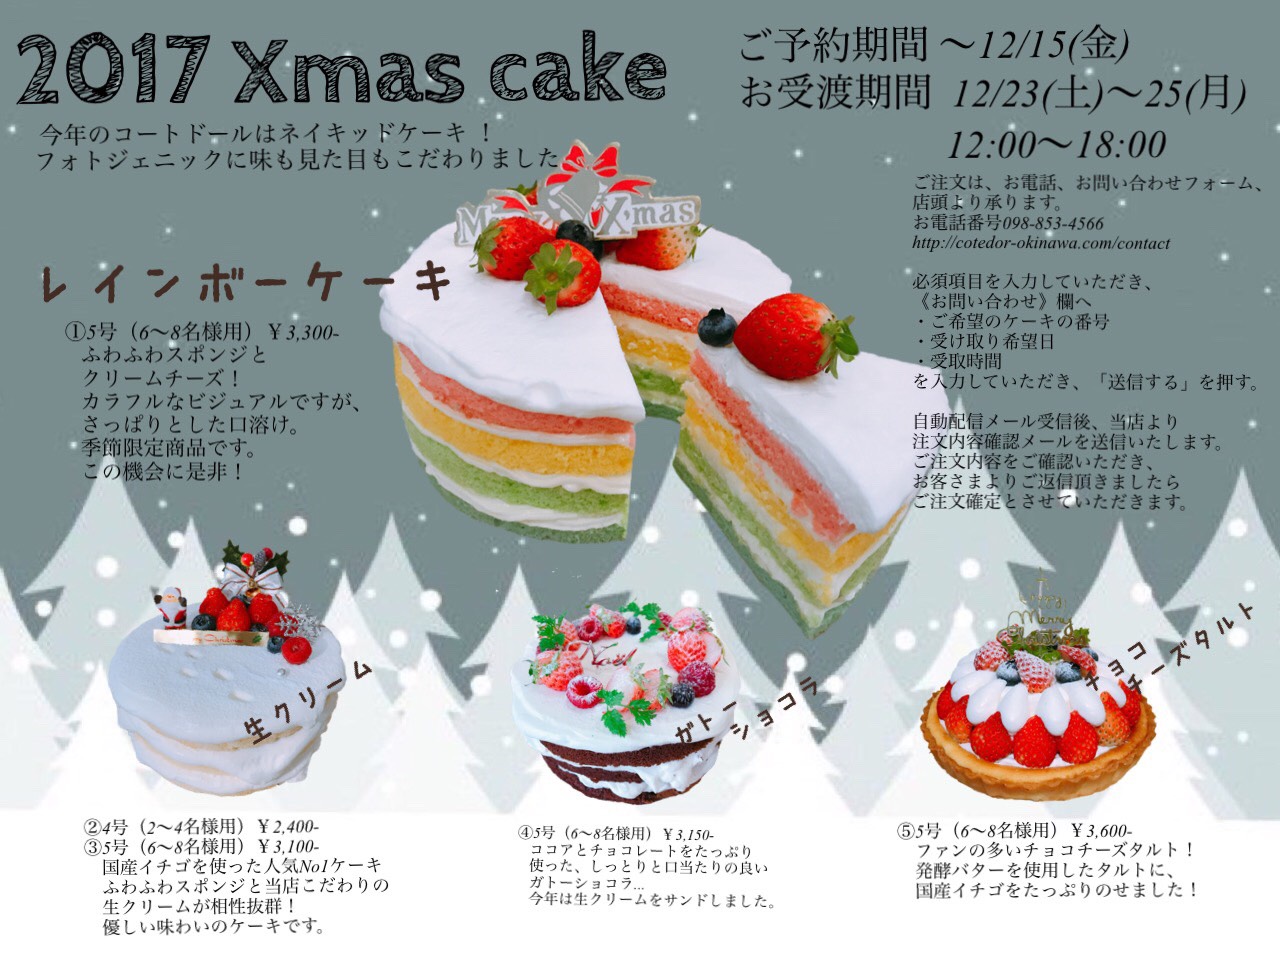 クリスマスケーキのお知らせ 誕生日 バースデーケーキ キャラクターケーキ 沖縄那覇市のスイーツ専門店 コートドール